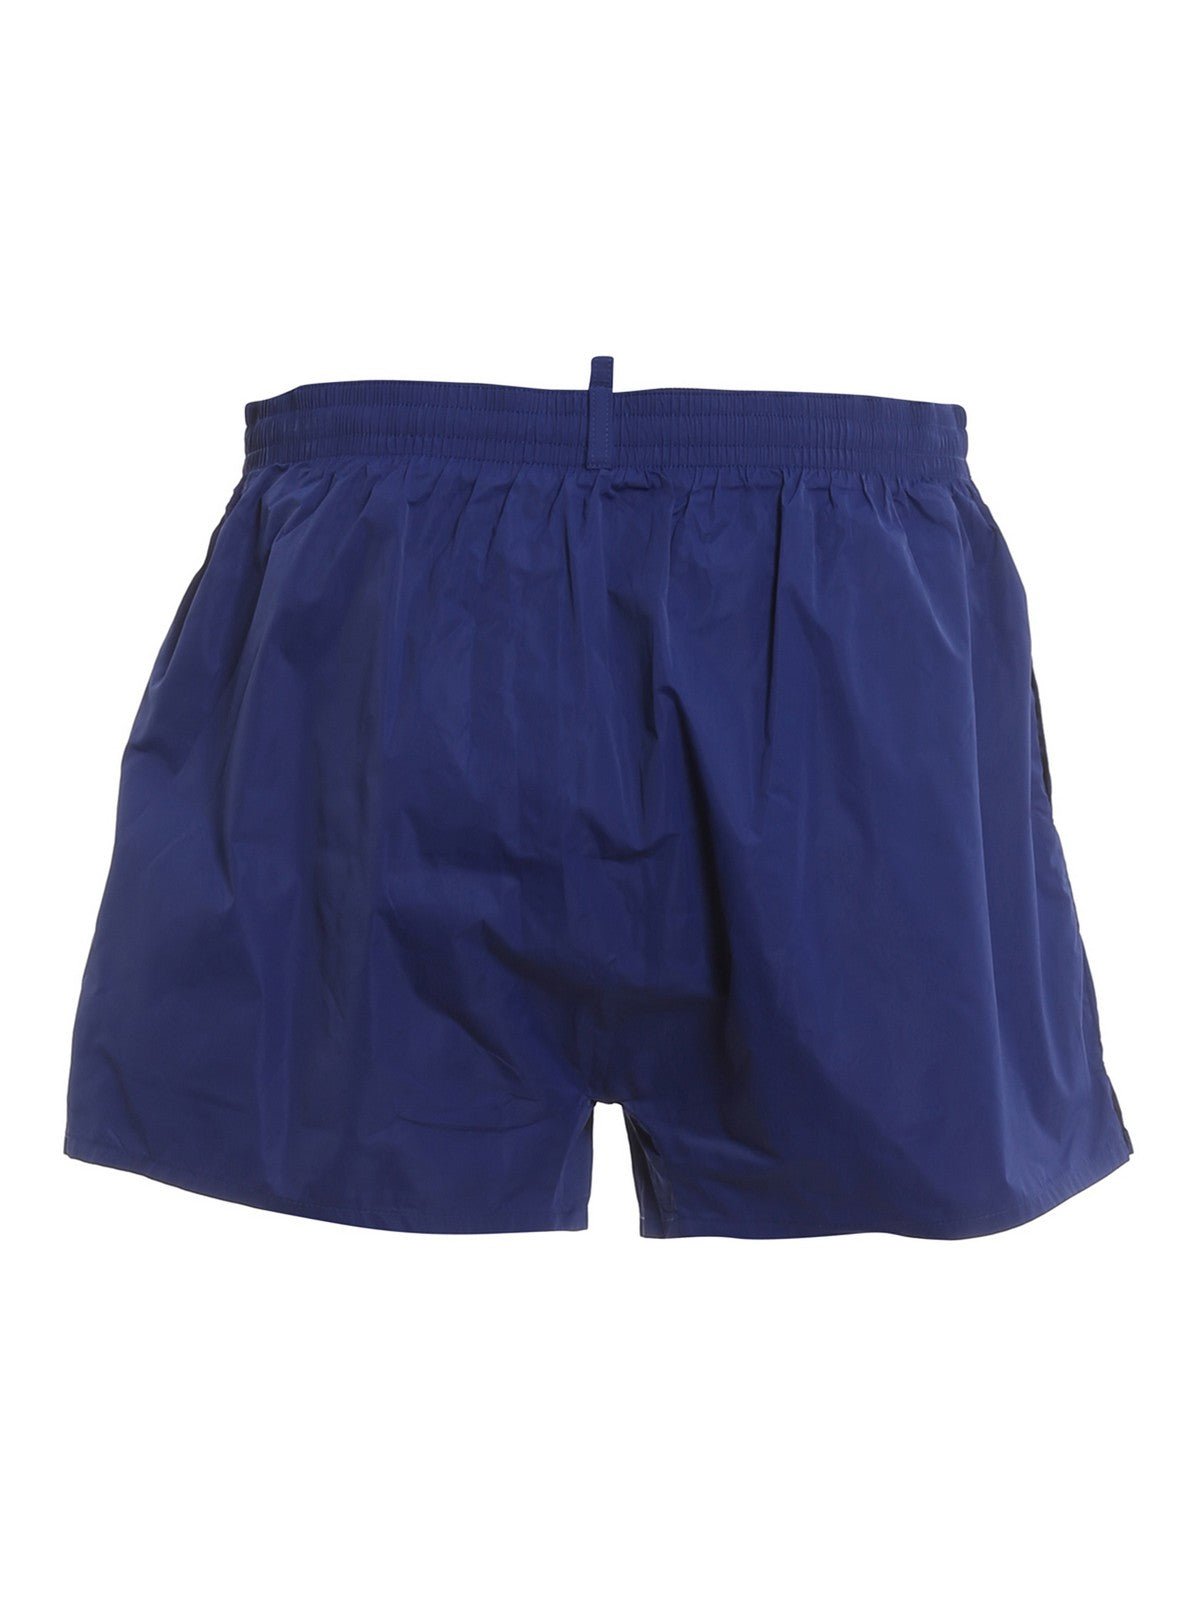 Dsquared2 Logo Swim Shorts - 460 Blue - Escape Menswear